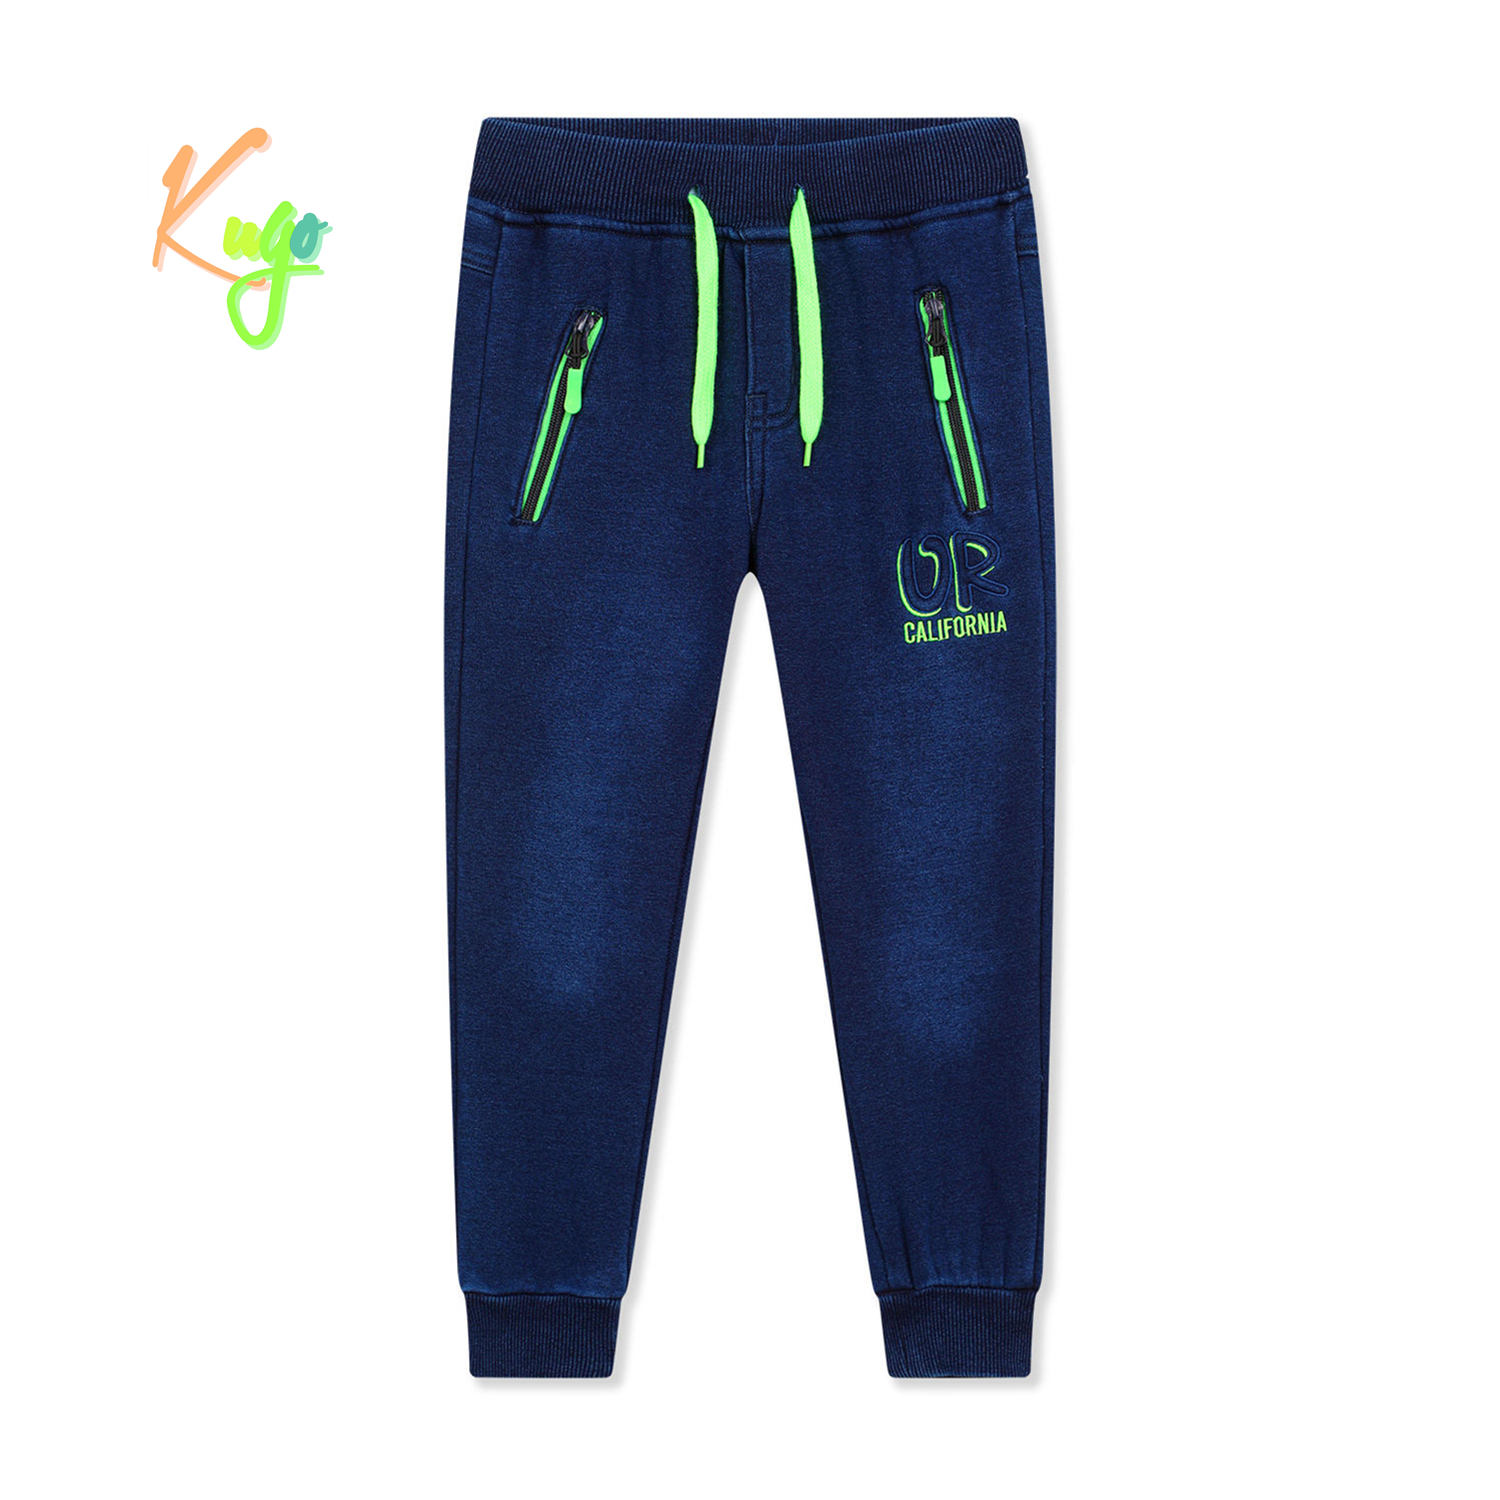 Chlapecké riflové kalhoty/ tepláky, zateplené - KUGO FK0317, modrá Barva: Modrá, Velikost: 134